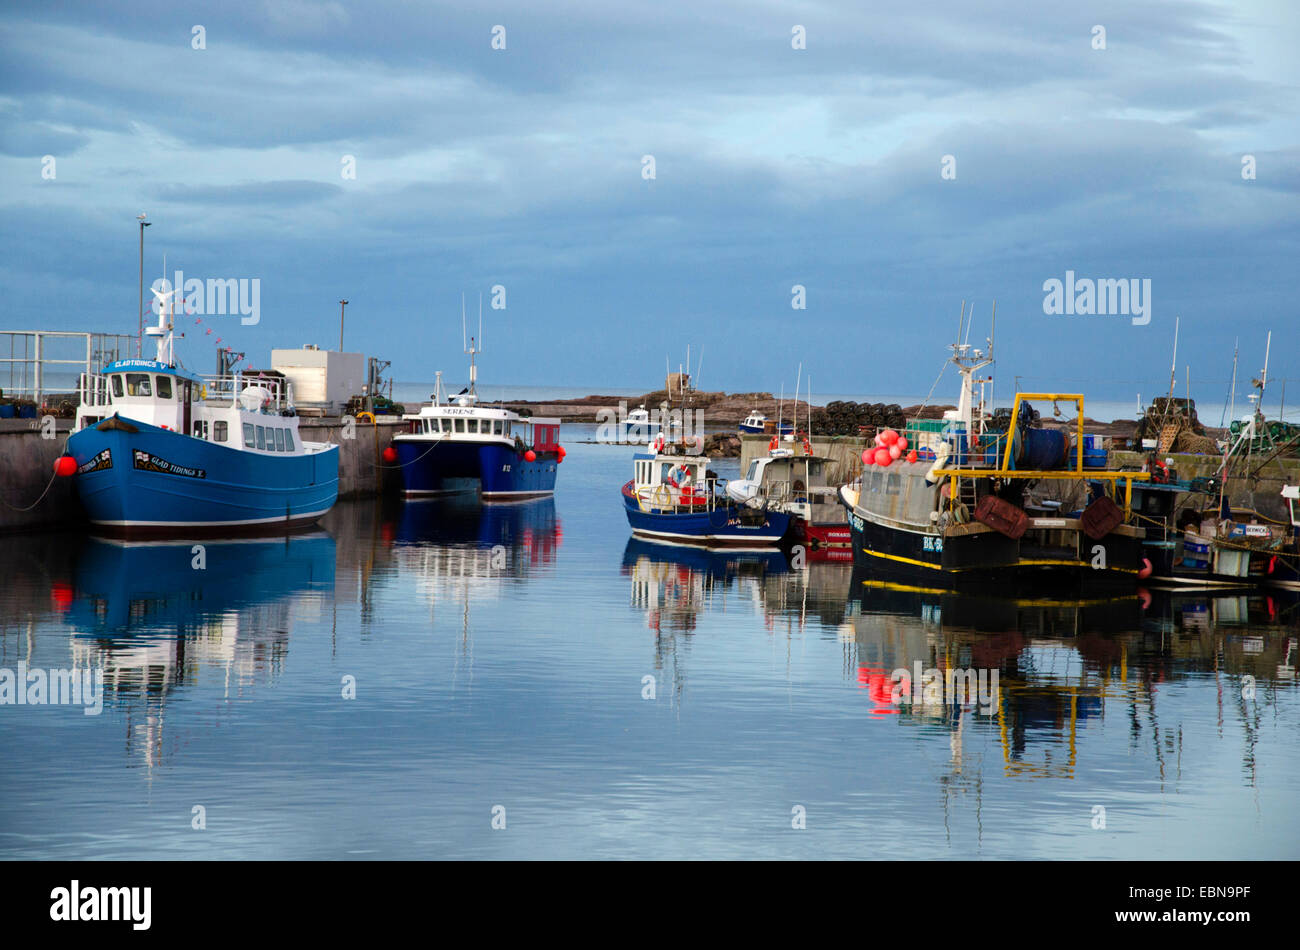 Freude, dass Boote gemeinsame Abendlicht Hafen festgemacht Farne Inseln Reisen Northumberland, England, Vereinigtes Königreich, Northumberland Stockfoto